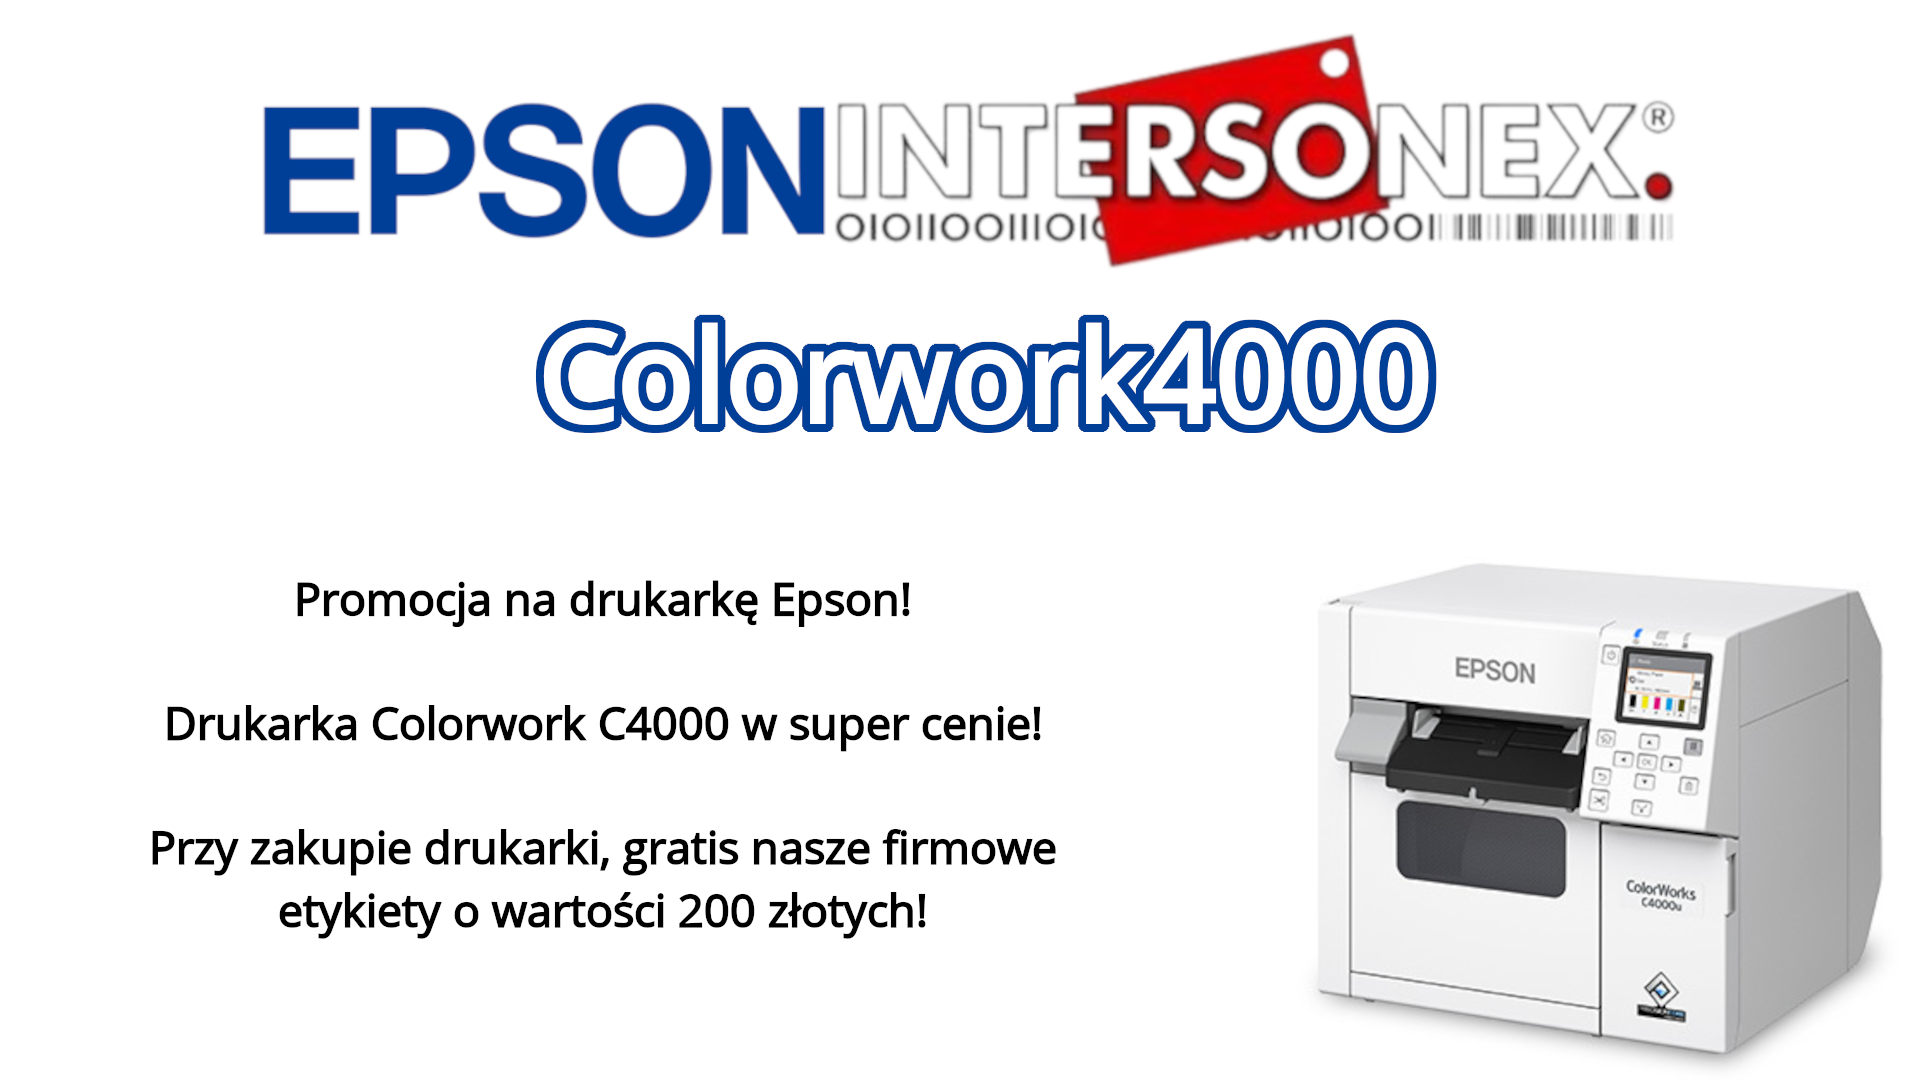 !Promocja na drukarkę Epson! Przy zakupie drukarki Epson Colorwork C4000, otrzymasz zestaw firmowych etykiet o wartości 200 złotych, przeznaczonych do tego modelu.  >>Kliknij i sprawdź<